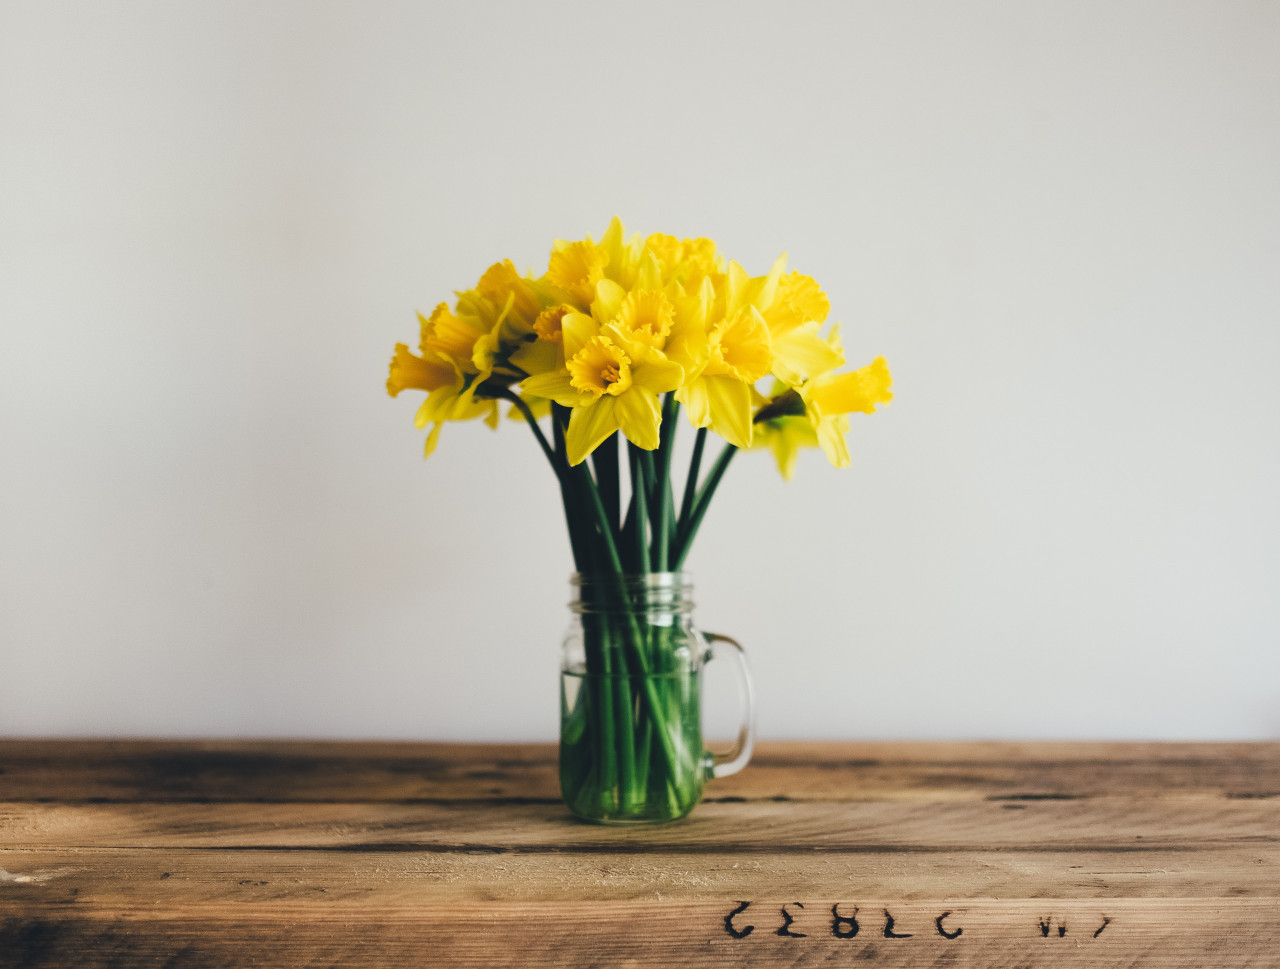 Regalar flores amarillas, símbolo de amor. Foto: Unsplash